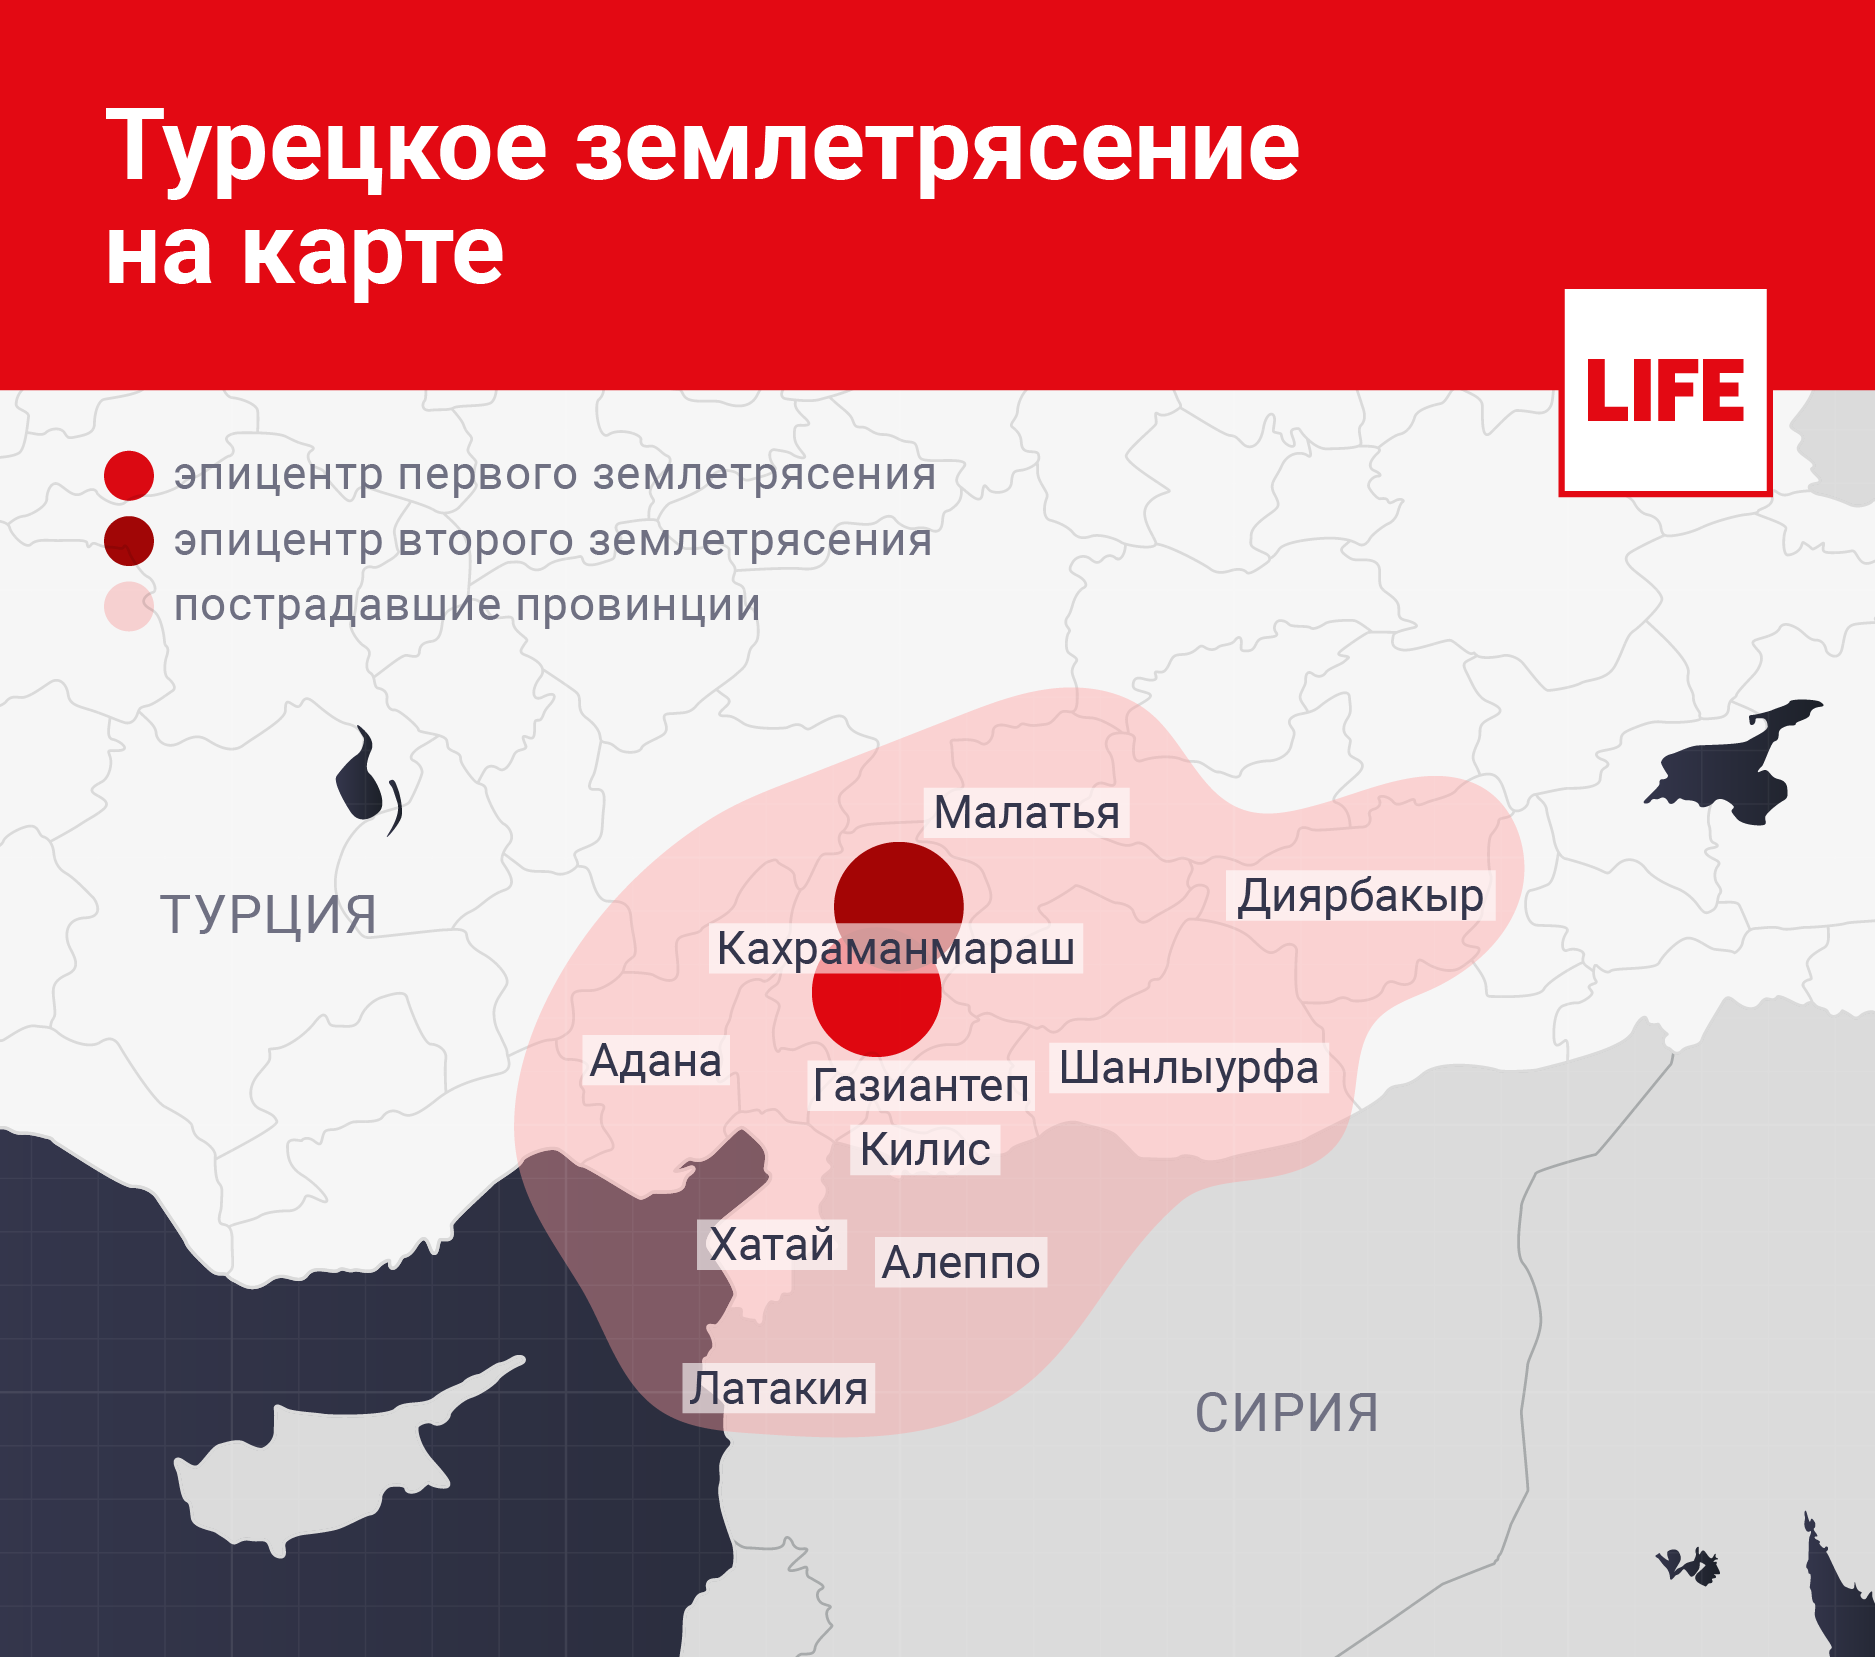 Турецкое землетрясение на карте. Инфографика © LIFE